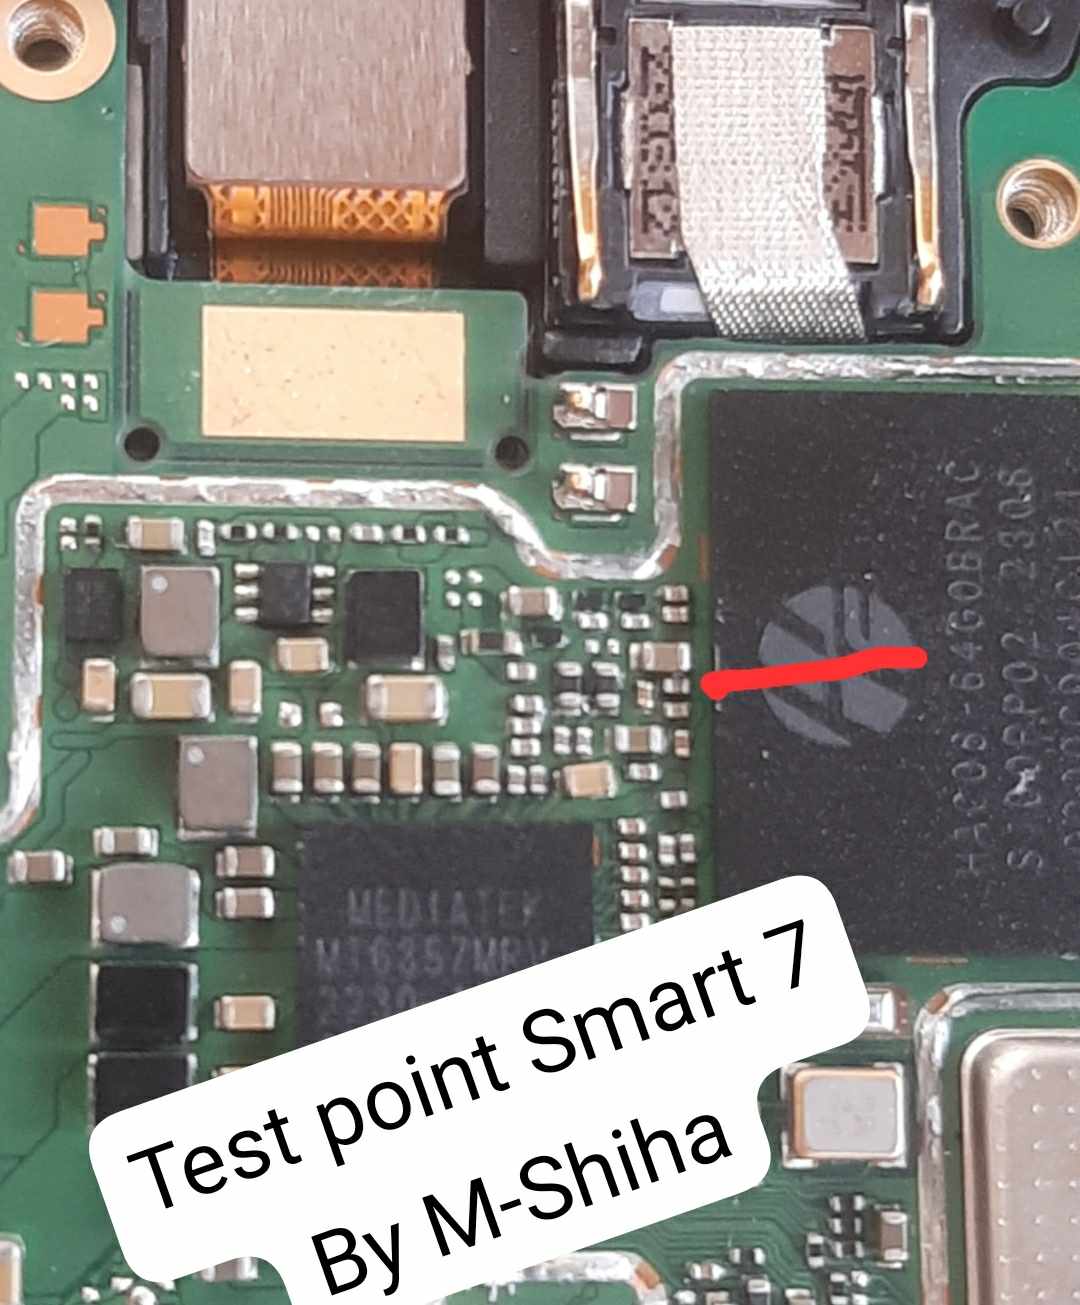 Infinx smart 5 X6515 test point